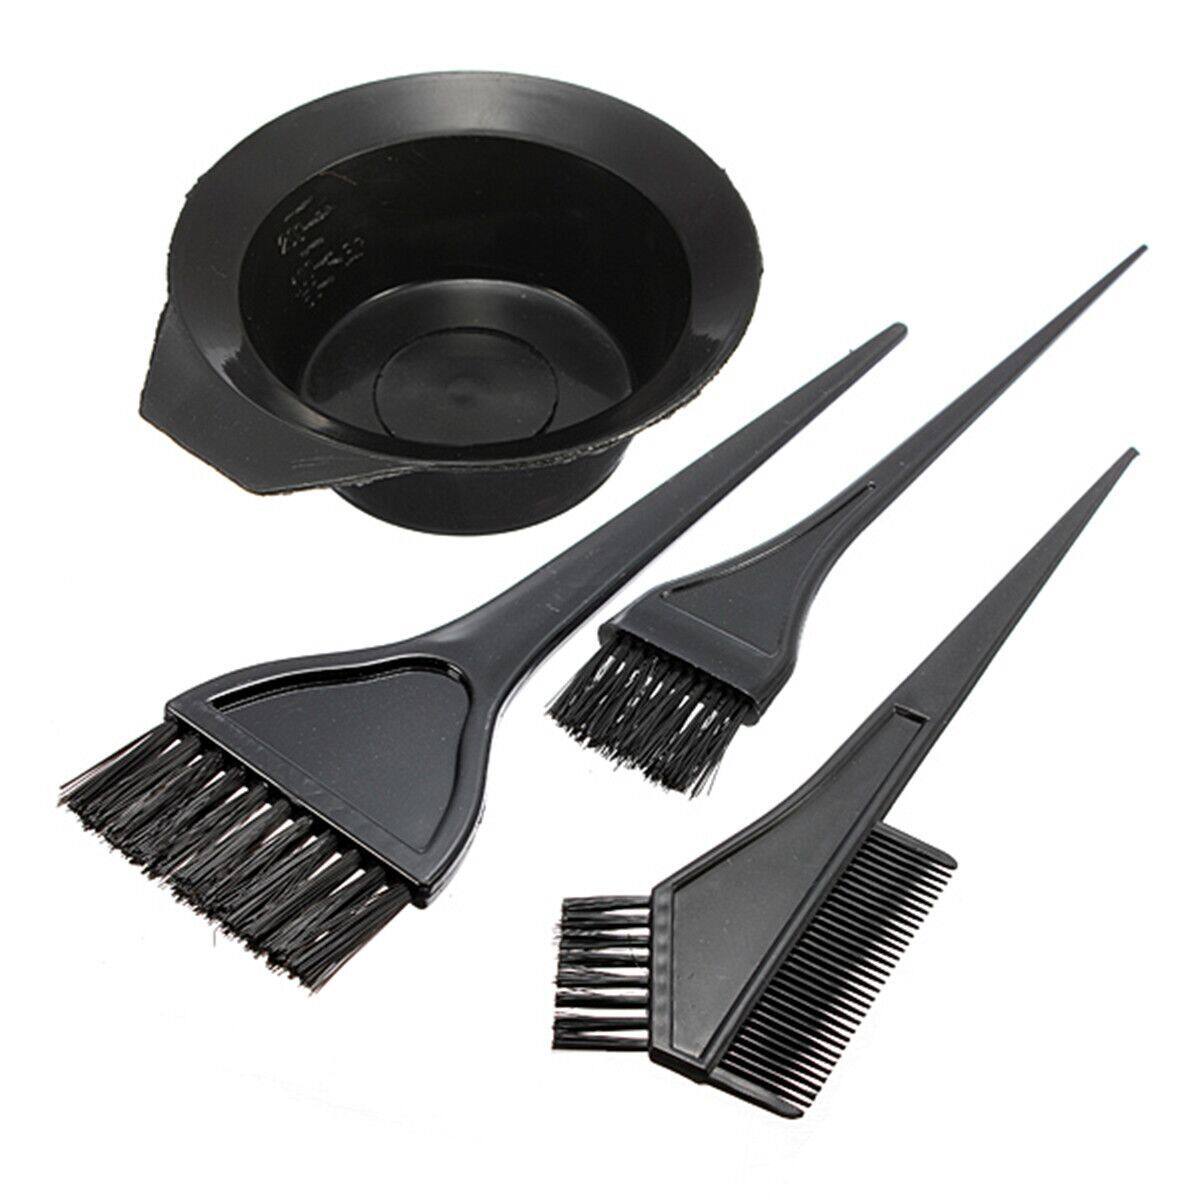 Hình ảnh Bộ dụng cụ nhuộm tóc màu đen gồm 4 món 1 bát nhựa và 3 lược chải tóc phù hợp dùng để tự làm tóc tại nhà - INTL